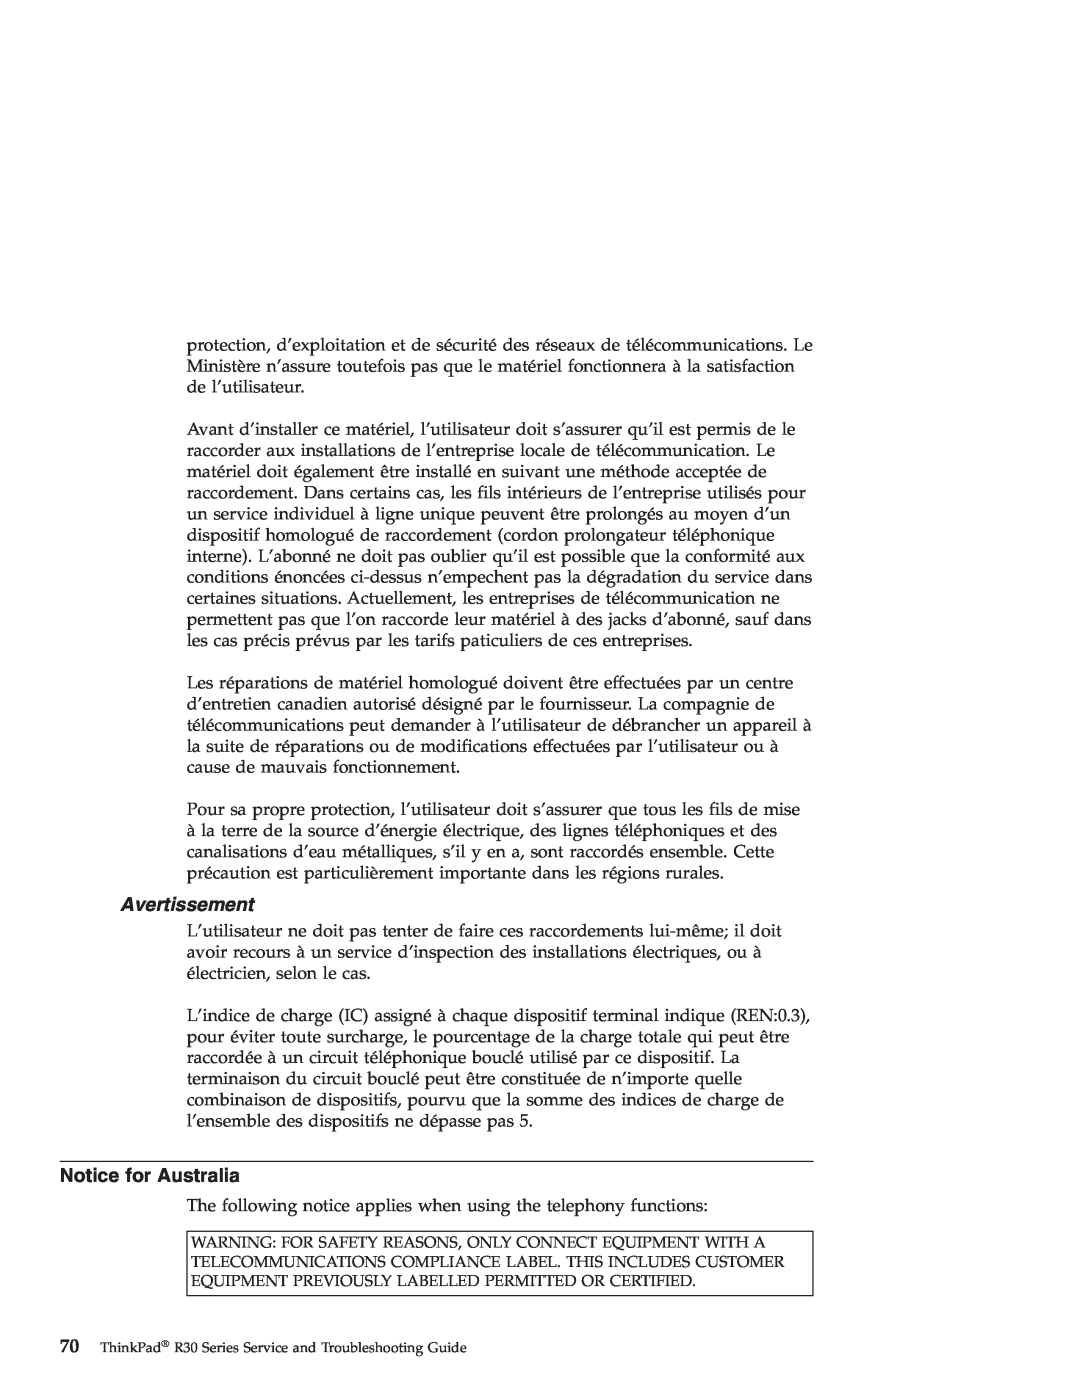 IBM R30 manual Avertissement, Notice for Australia 